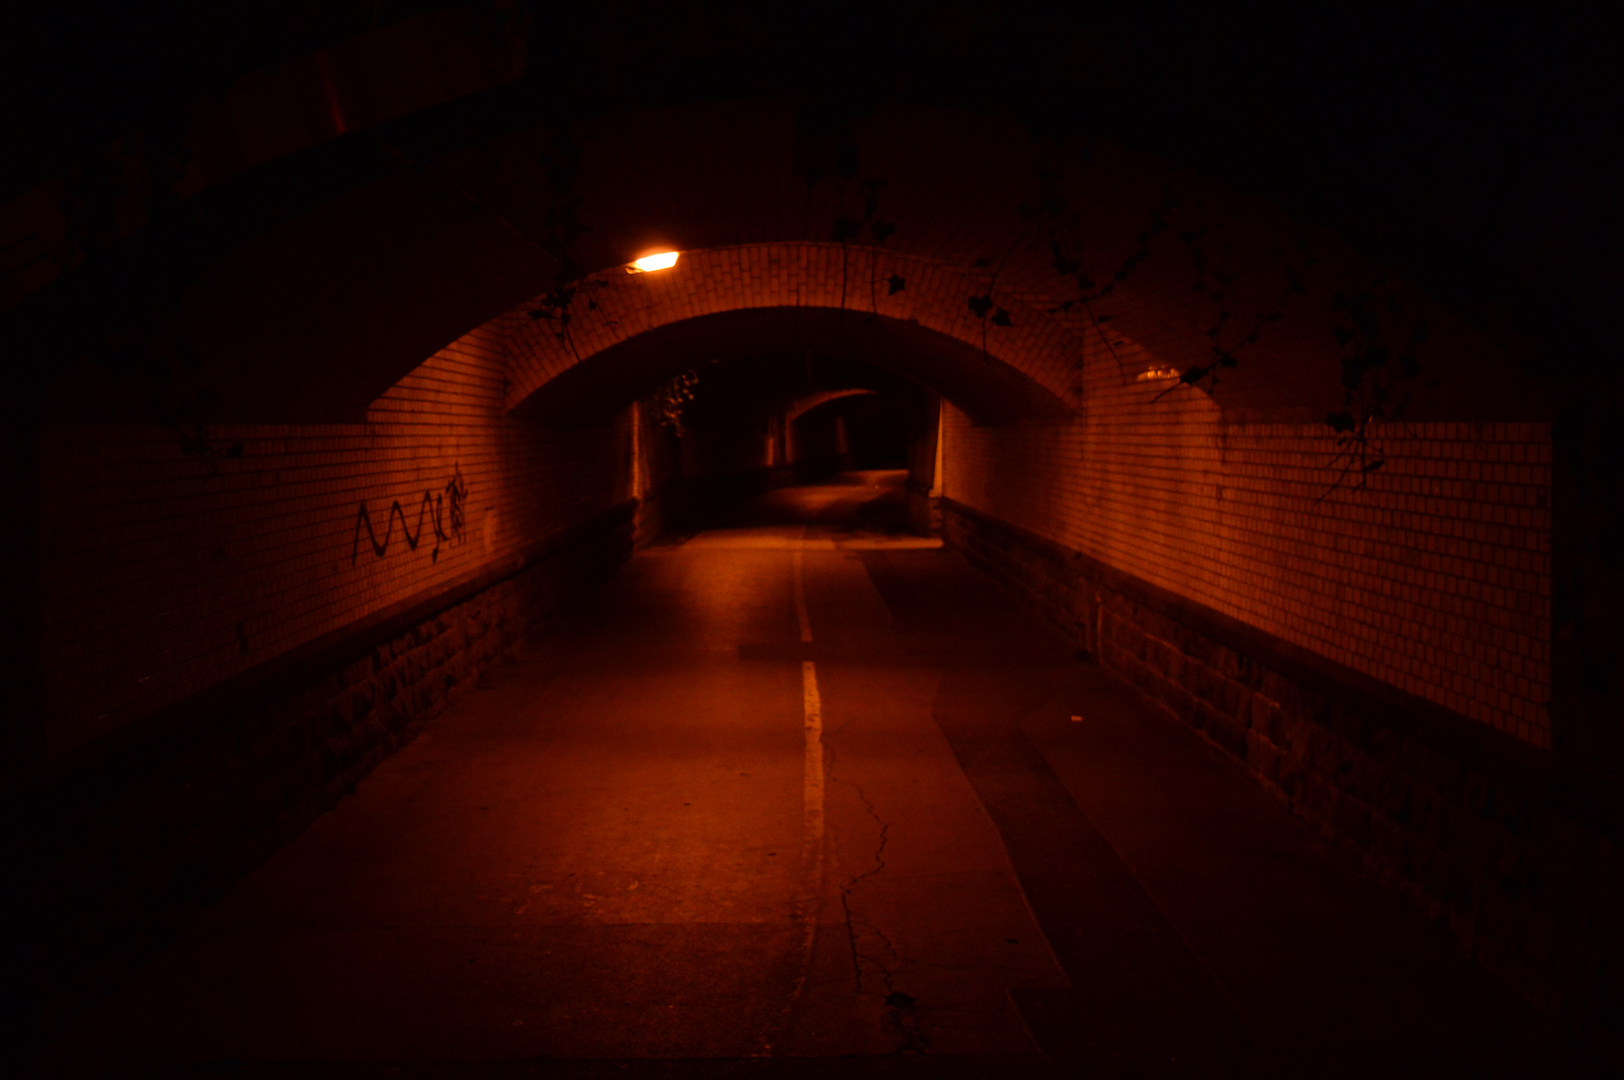 Kein Licht am Ende des Tunnels